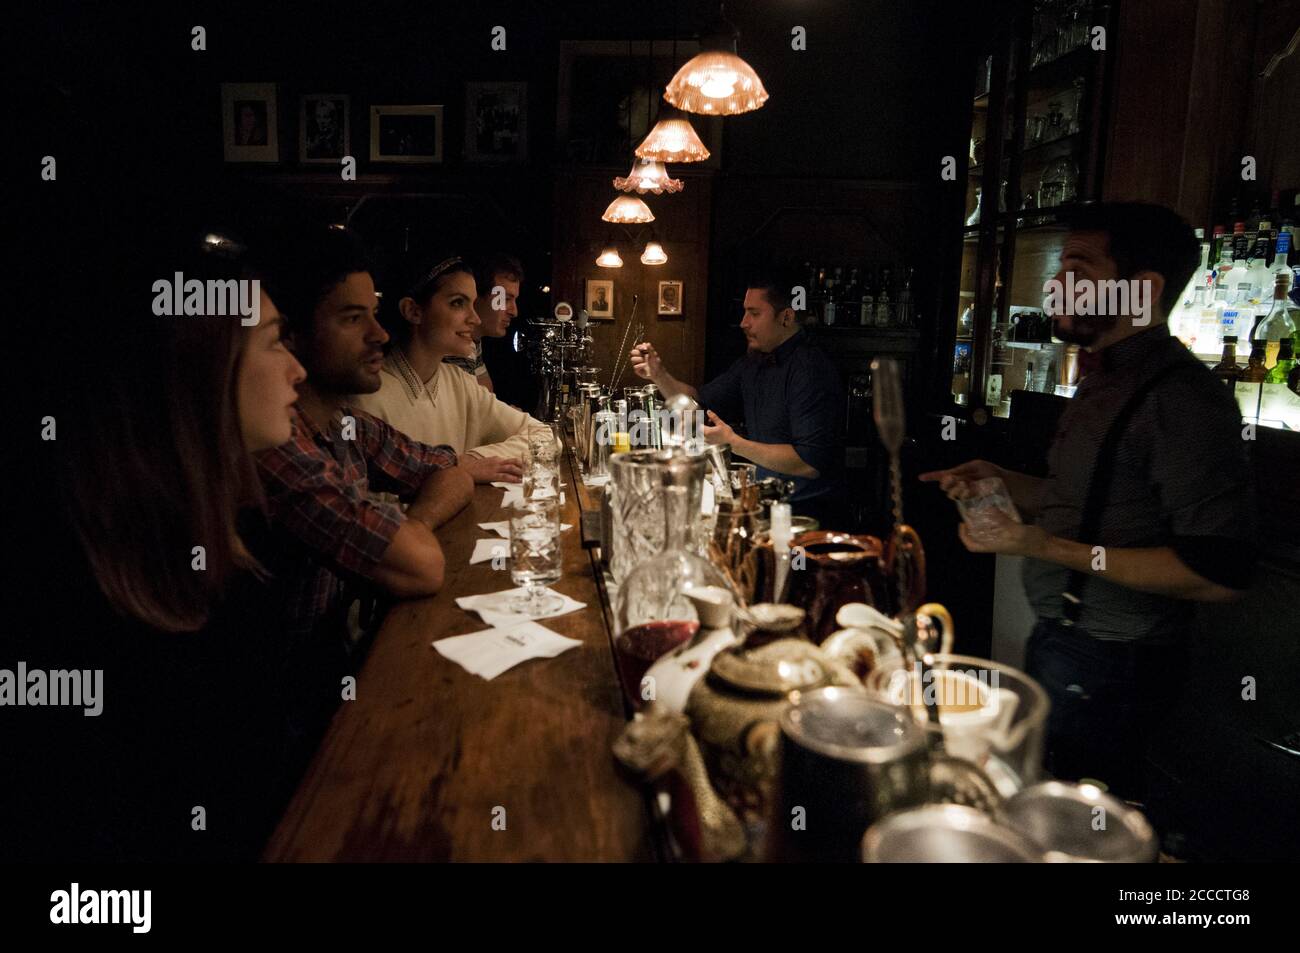 BUENOS AIRES, ARGENTINIEN - 19. Sep 2015: Eine Gruppe junger Leute sitzt an der Bar eines speakeasy Pubs, während die Barkeeper ihre Getränke reparieren. Stockfoto